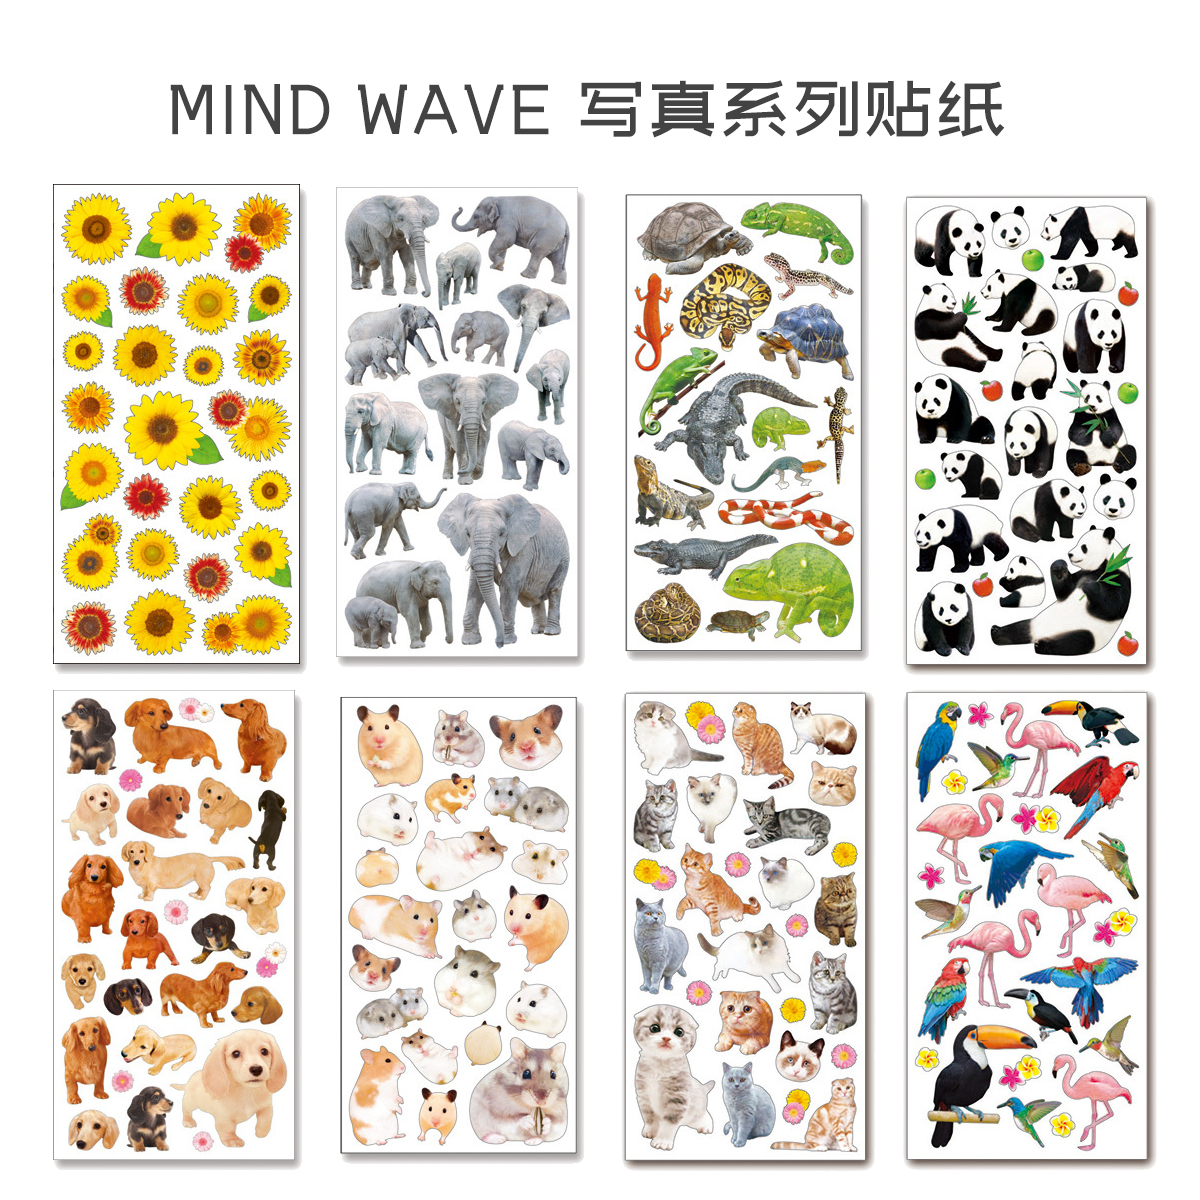 日本Mind Wave贴纸 照片写真花朵系列植物动物 儿童认知 装饰贴画